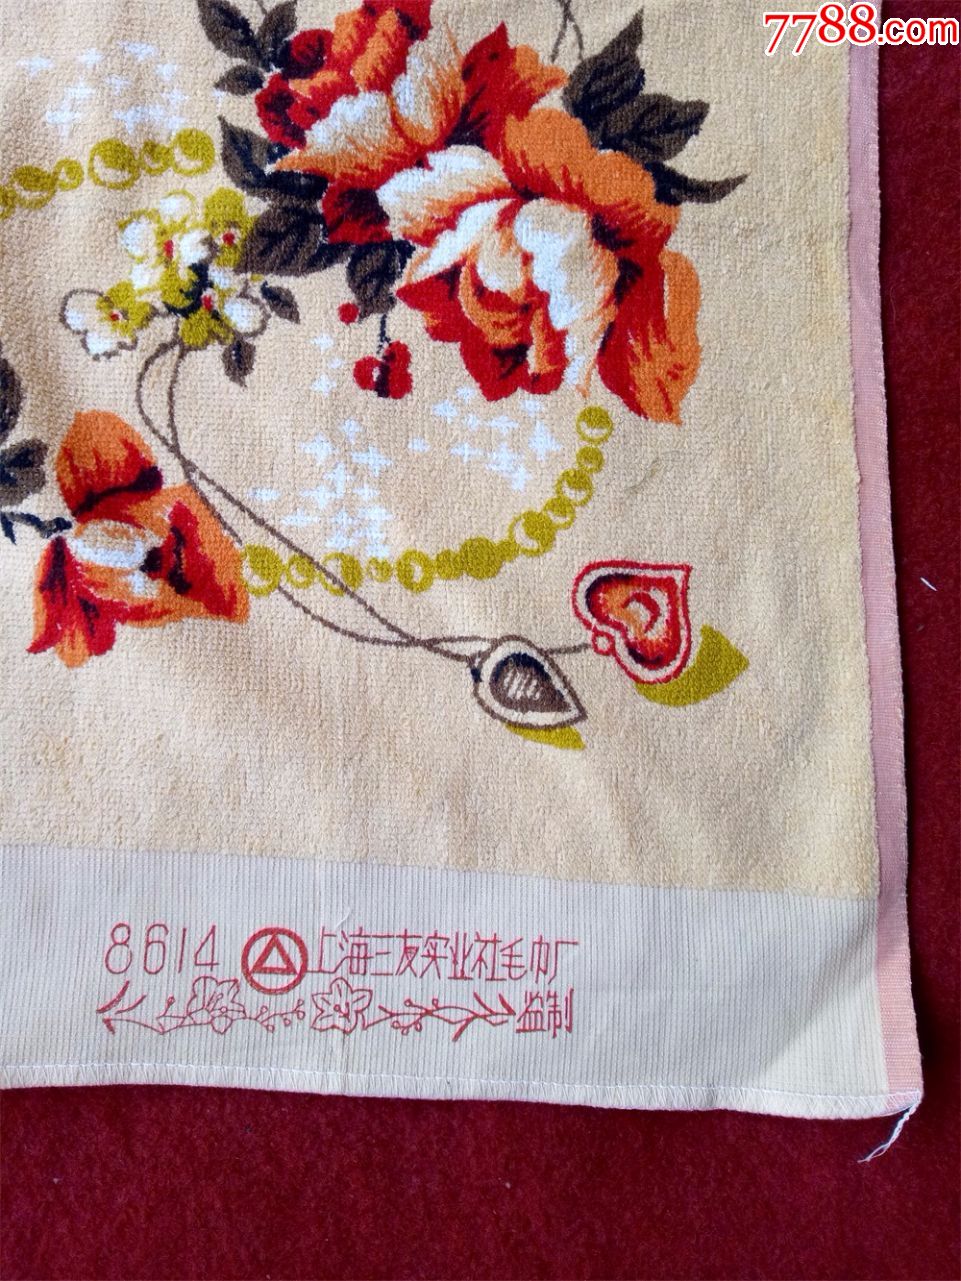 怀旧收藏八十年代毛巾枕巾花朵图案上海三友毛巾厂仅供收藏